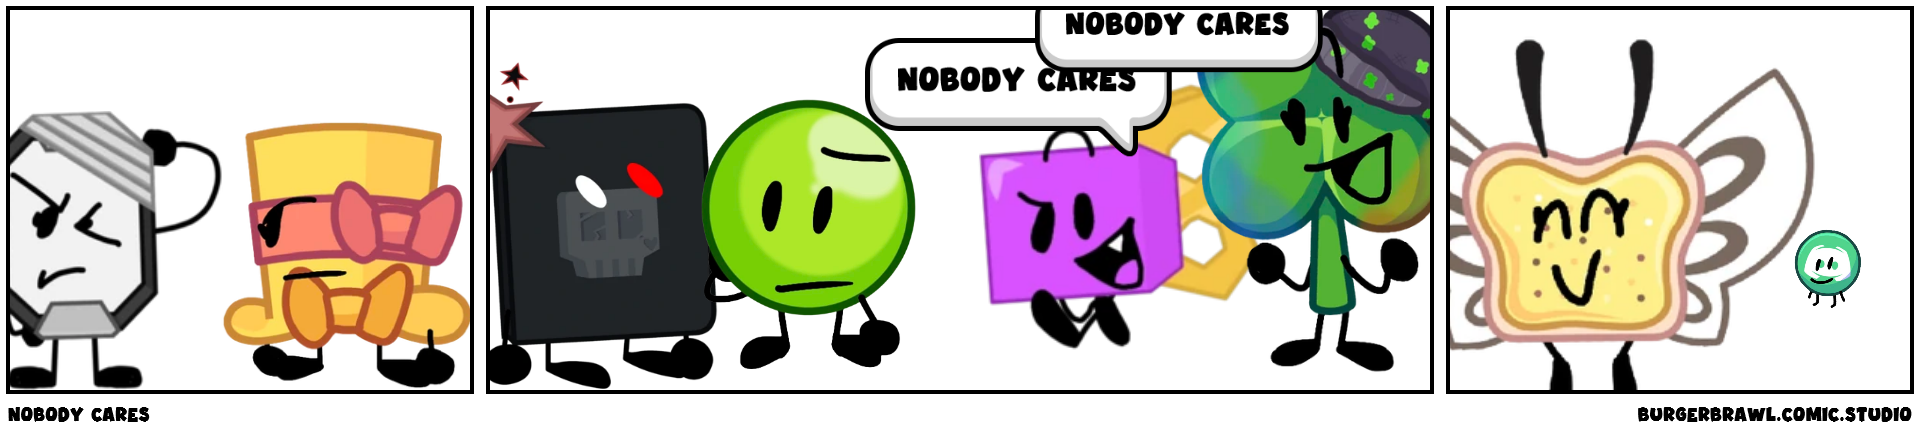 nobody cares